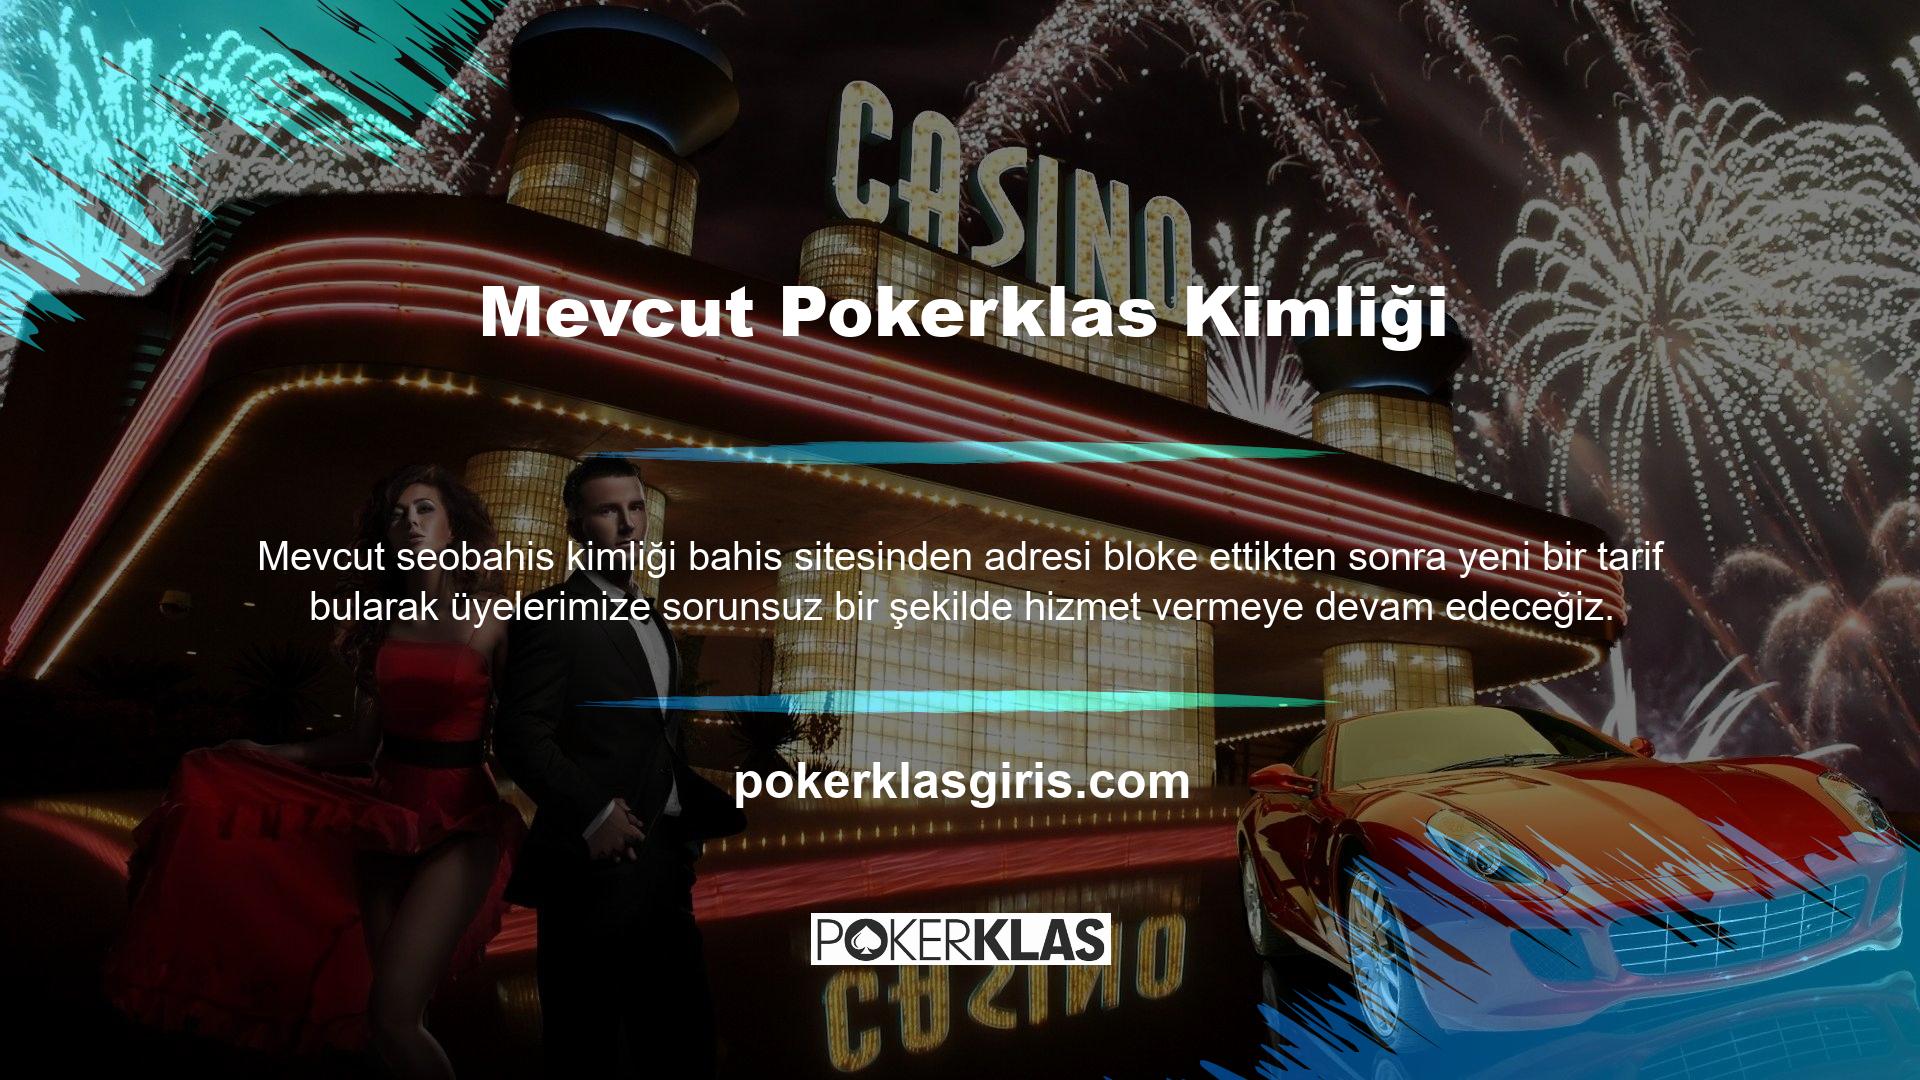 Web sitemizdeki butonu kullanarak güncel Pokerklas giriş adresini arayabilirsiniz